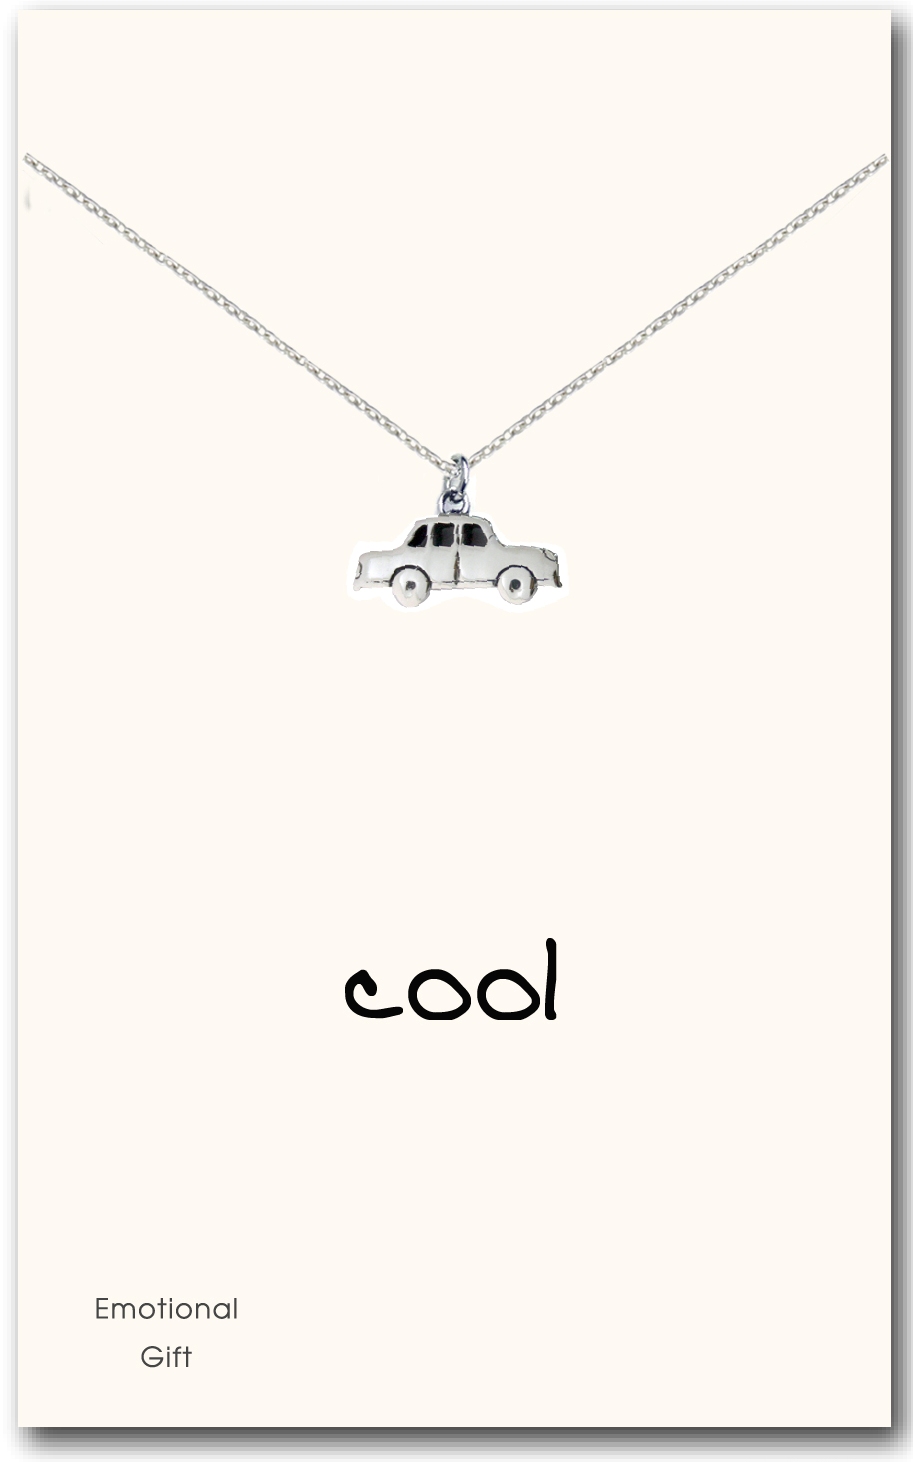 Cool car pendant necklace